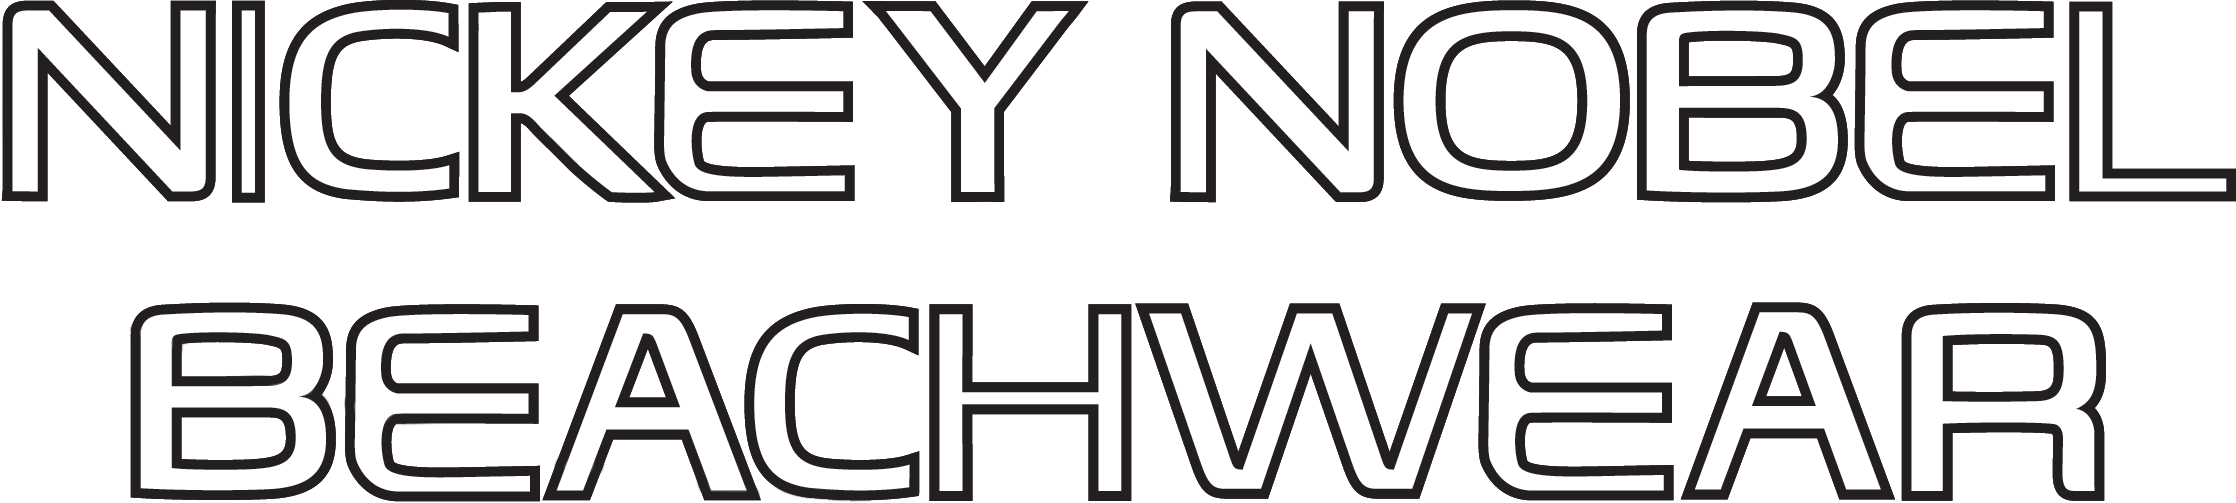 Nickey Nobel logo